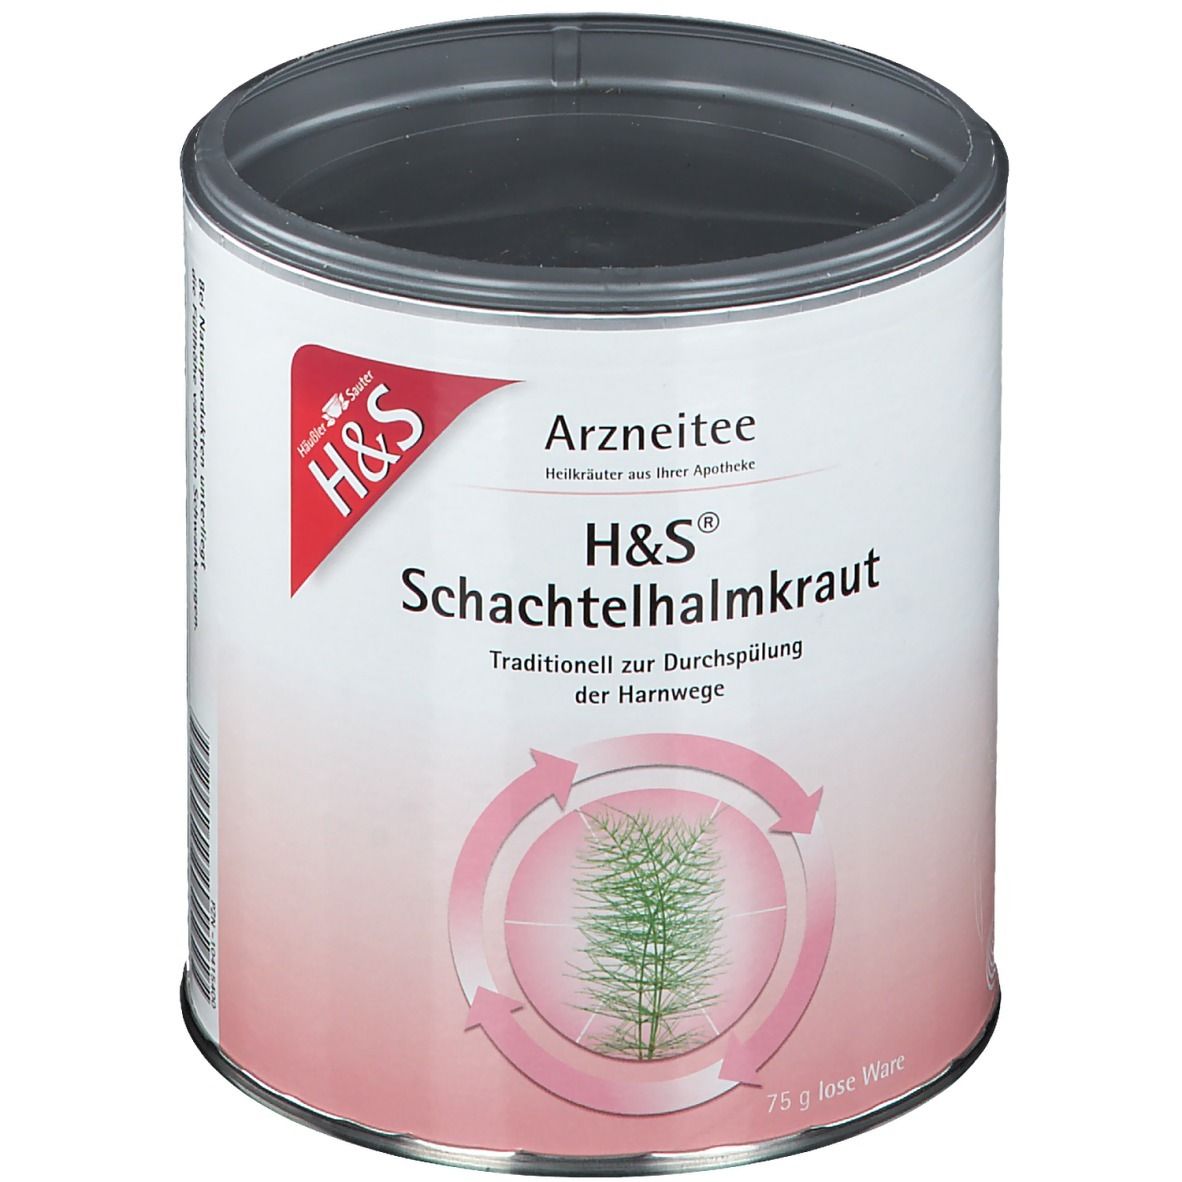 H&S® Schachtelhalmkraut Nr. 27